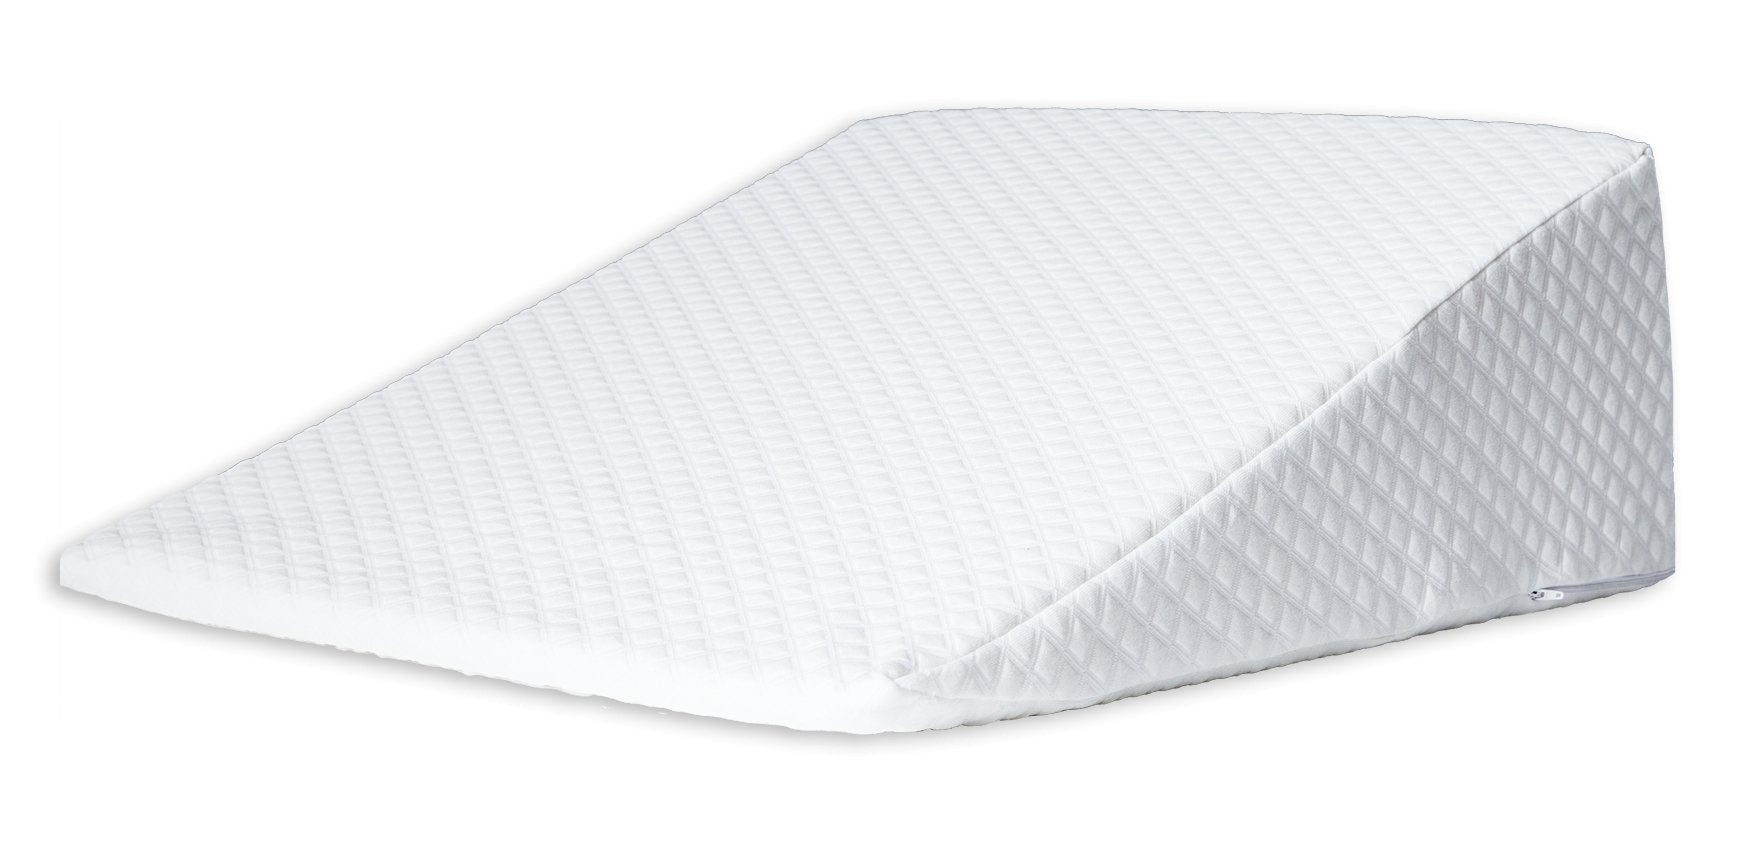 Flexi Pillow Bed Wedge - Mattress & Pillow SciencePillows